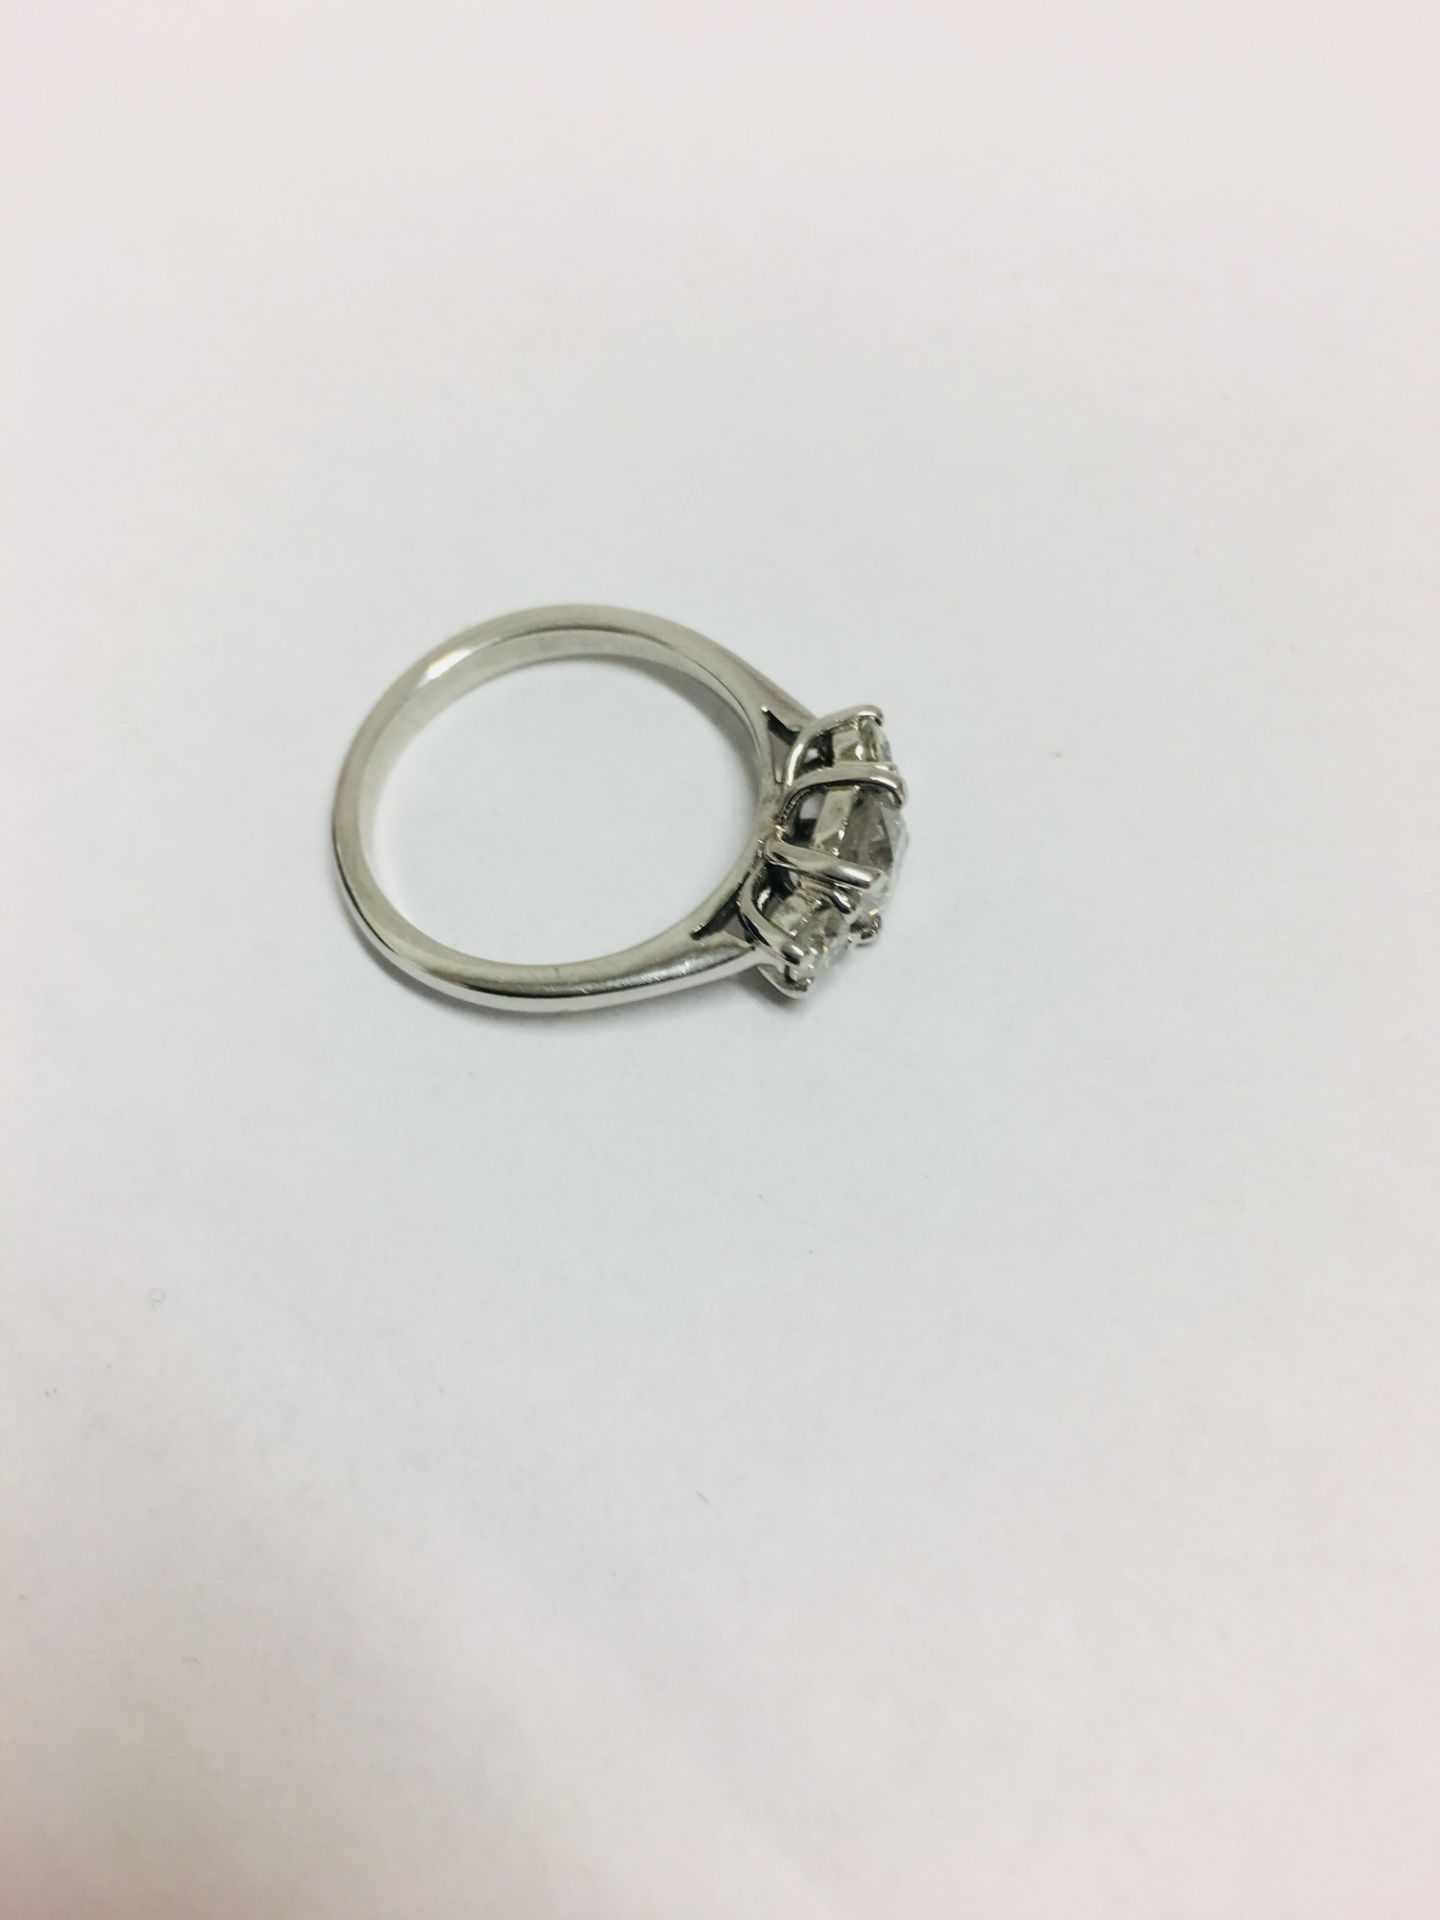 18ct white gold rilogy ring - Image 4 of 5